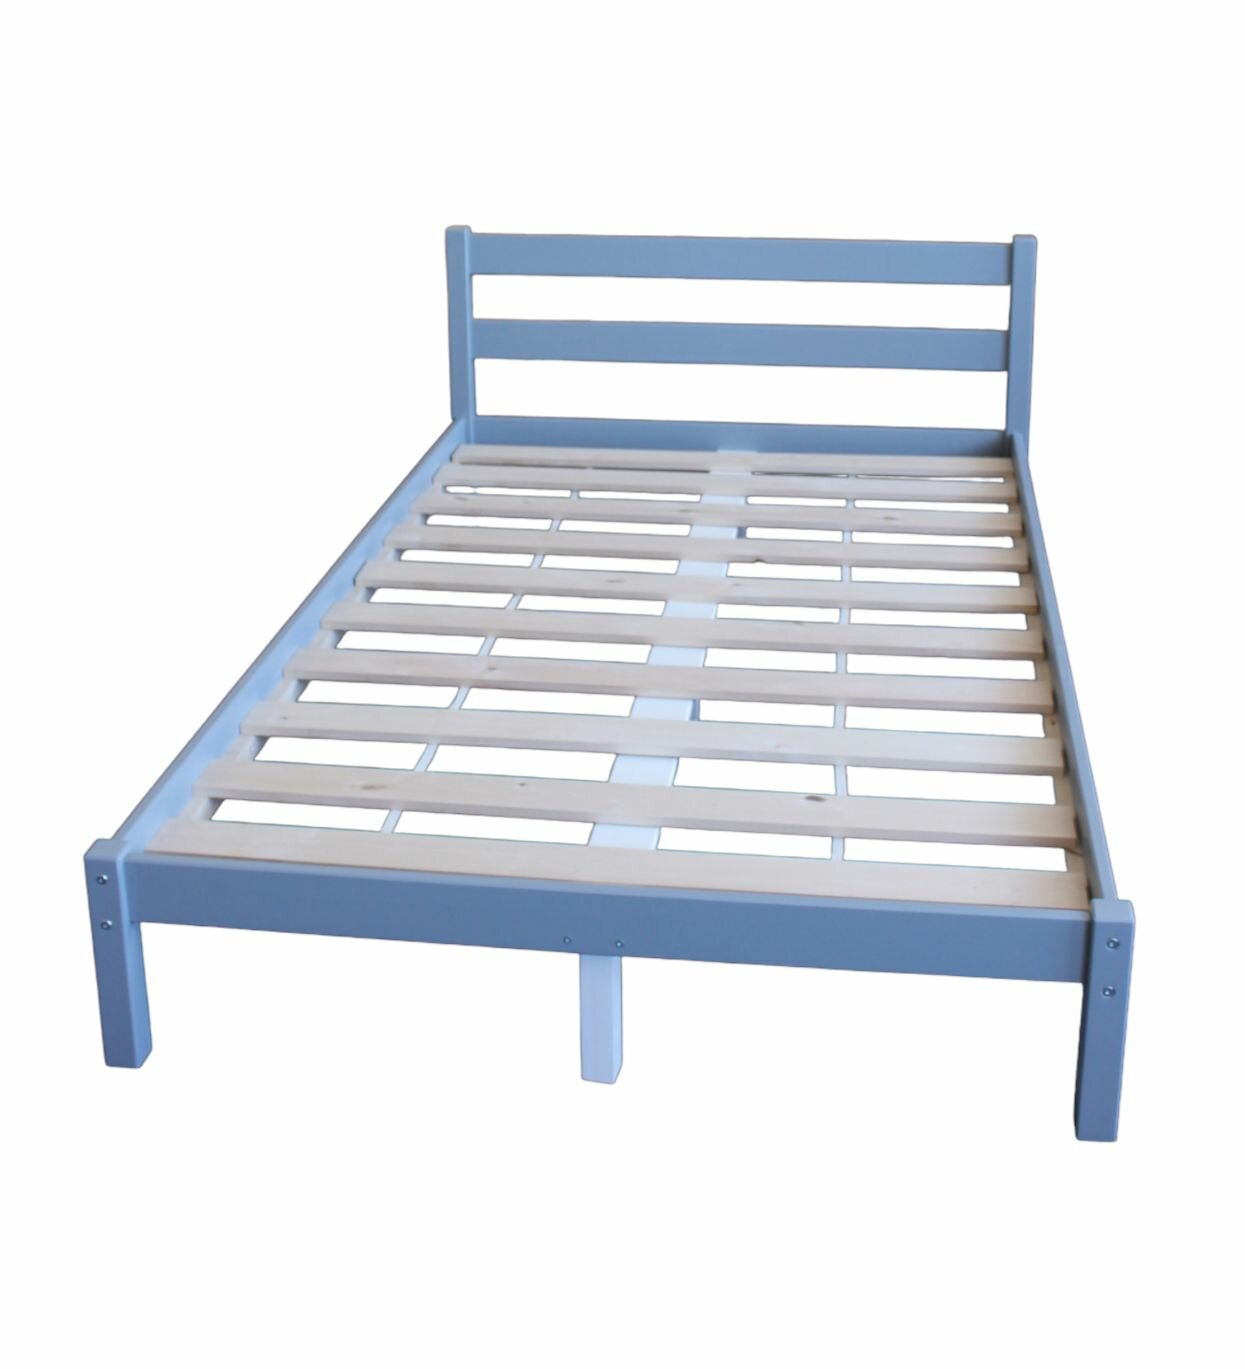 Кровать двуспальная деревянная из массива березы "Омега-1" 2000х1200